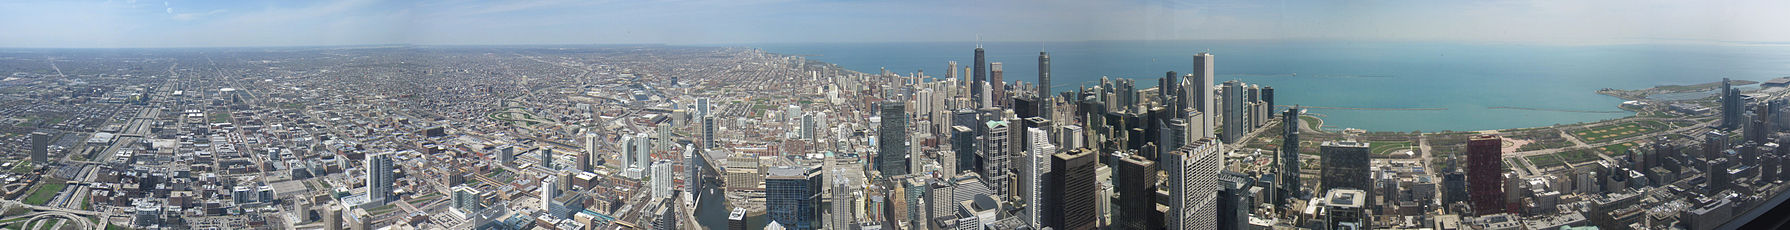 Vue sur la grande région métropolitaine de Chicago et le centre-ville dense depuis la Willis Tower